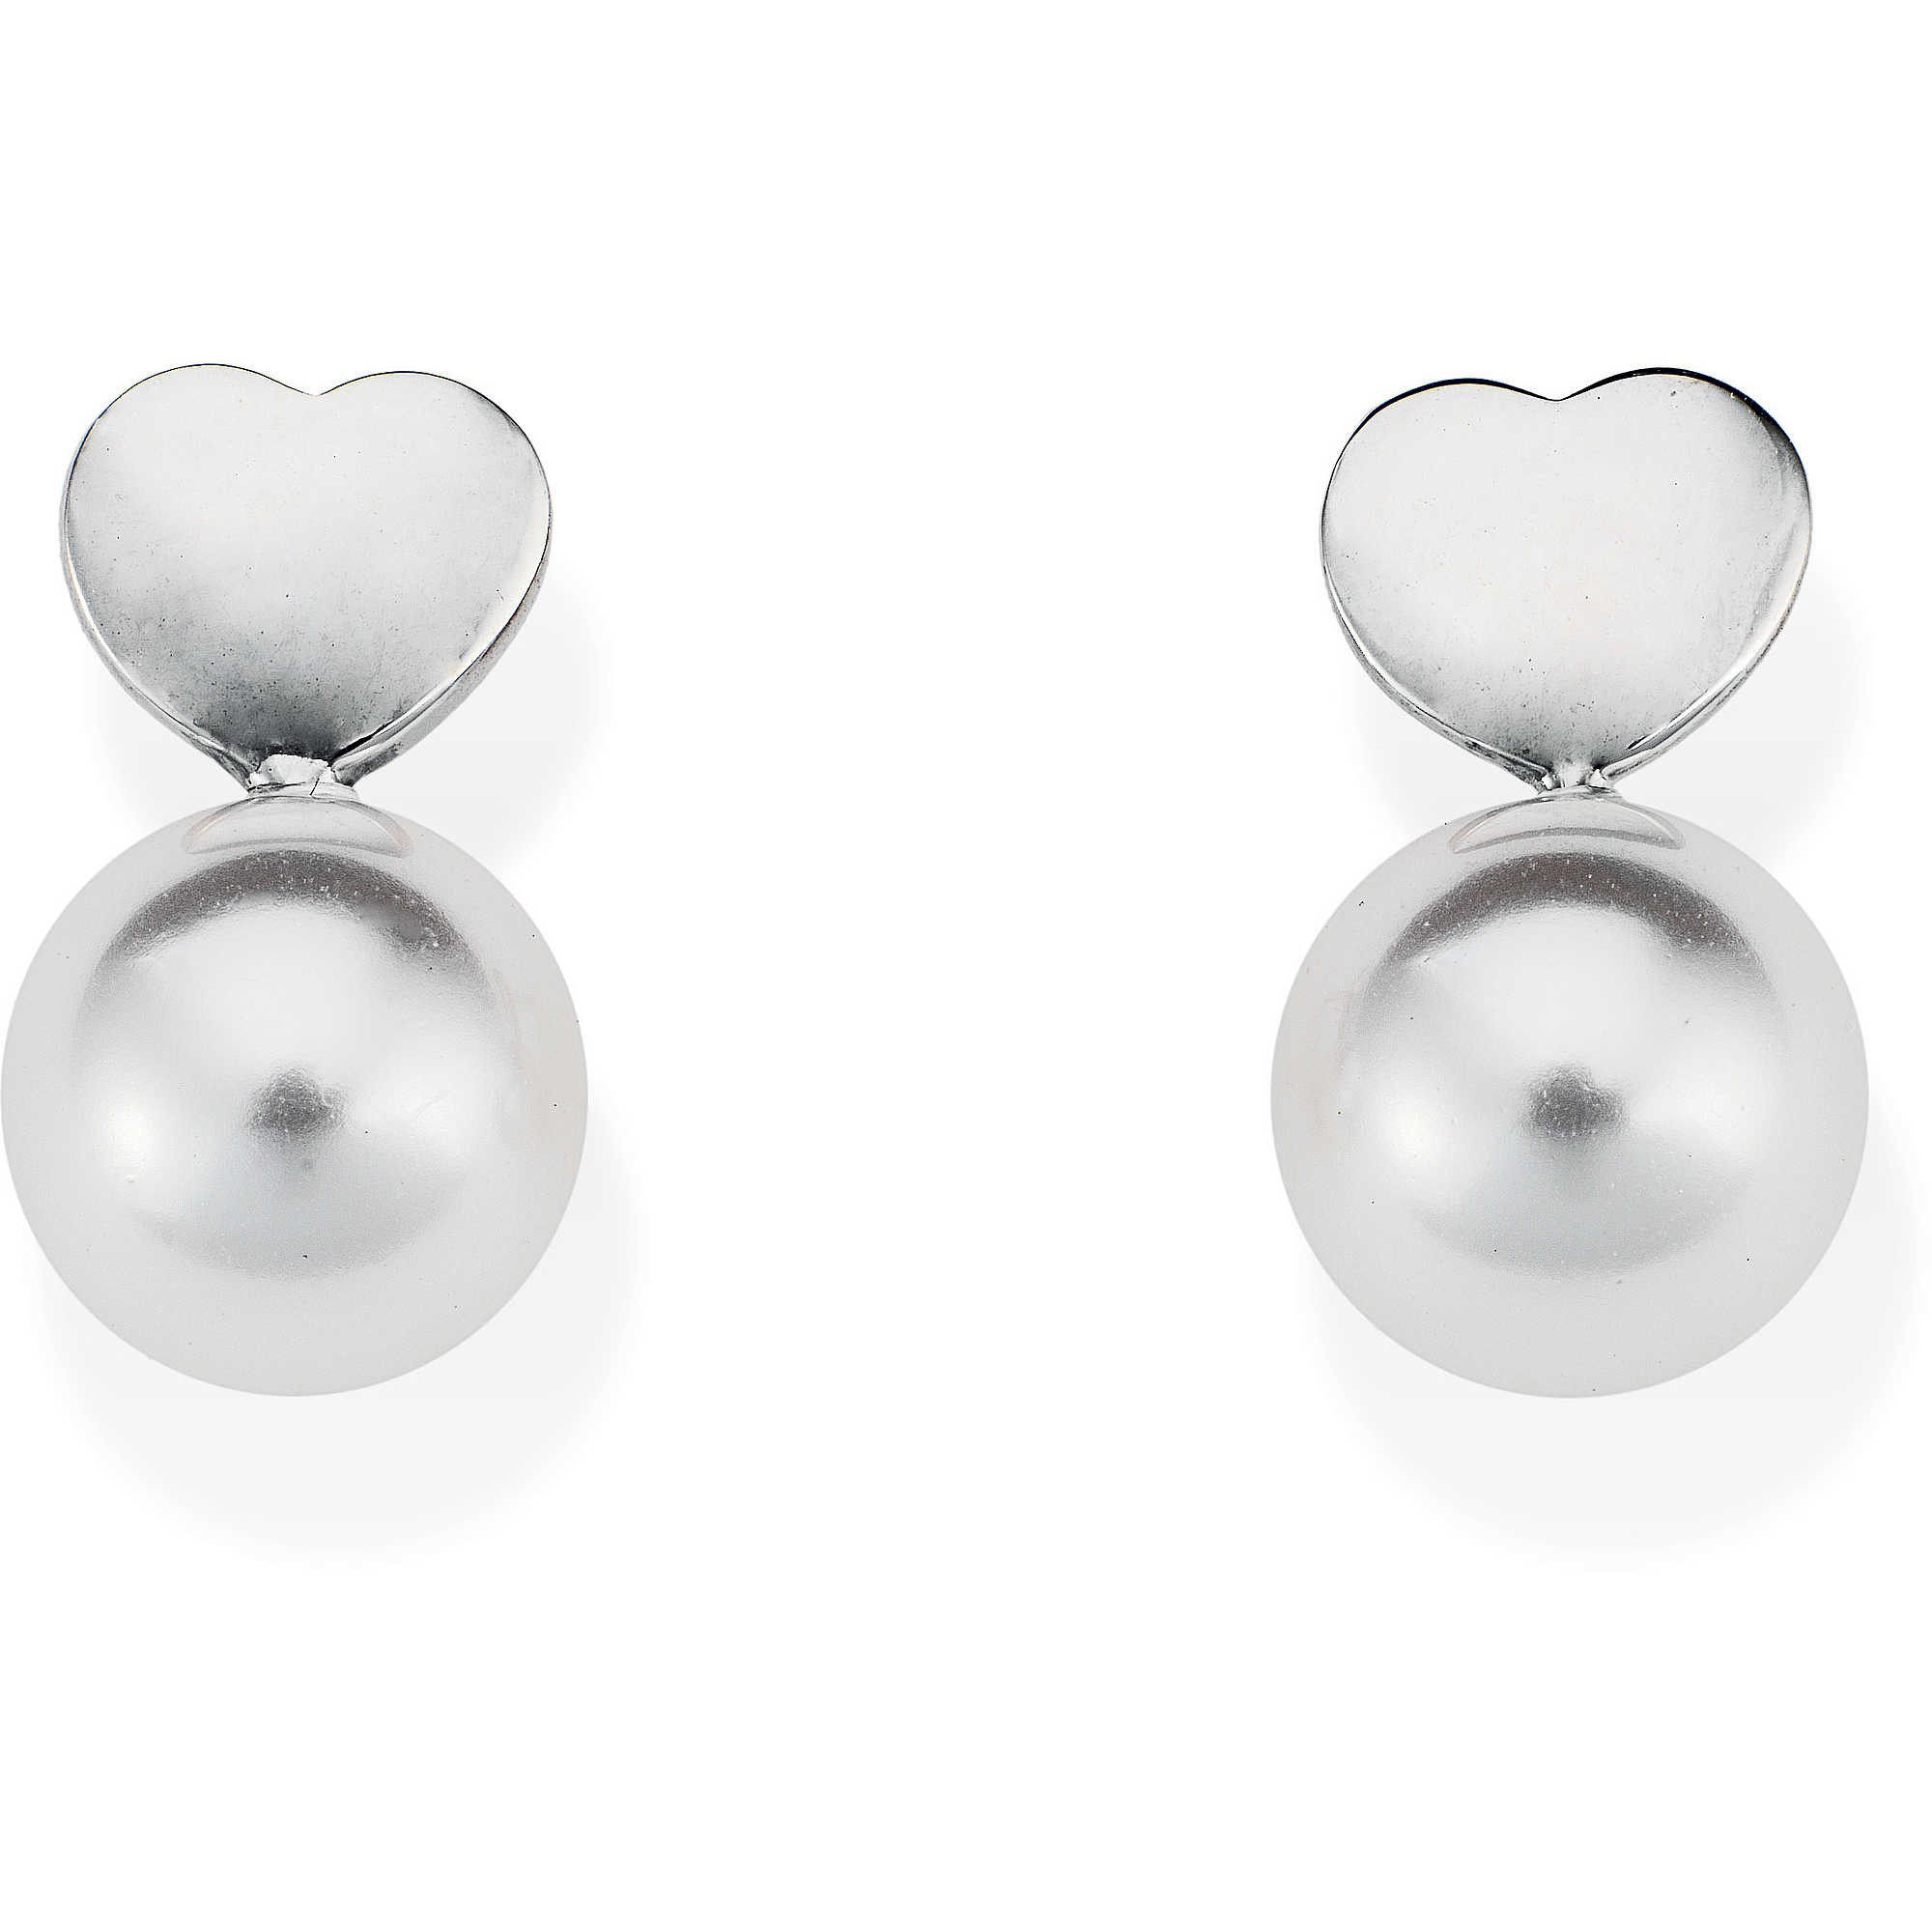 A-MEN: Orecchini donna in argento 925 con perle, lunghezza 0,7 cm, orpgb